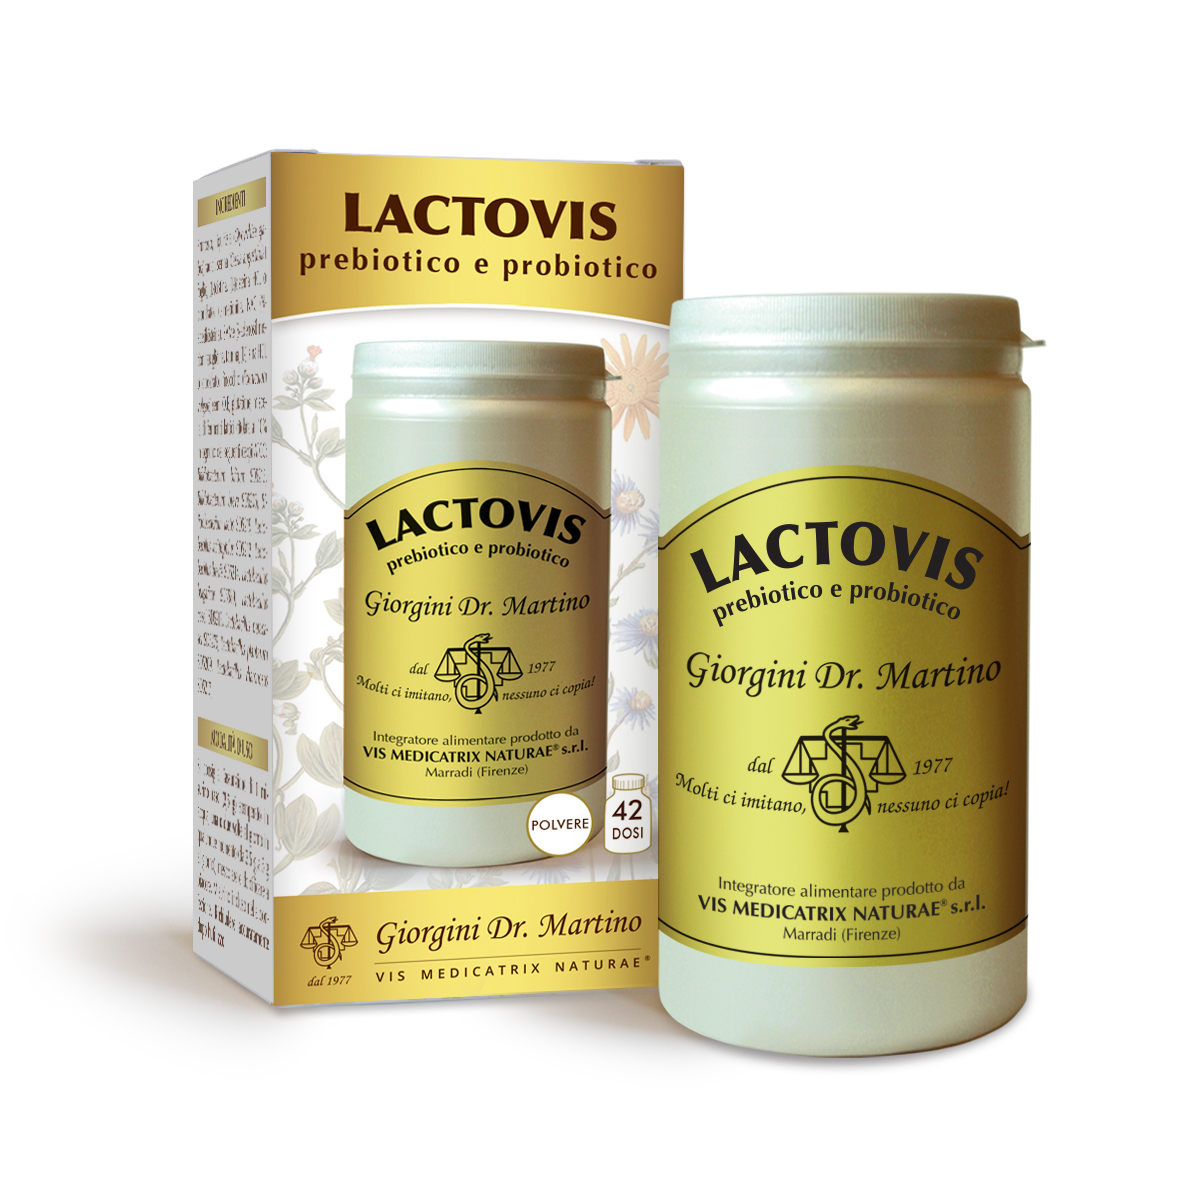 LACTOVIS Prebiotico e Probiotico 100 g